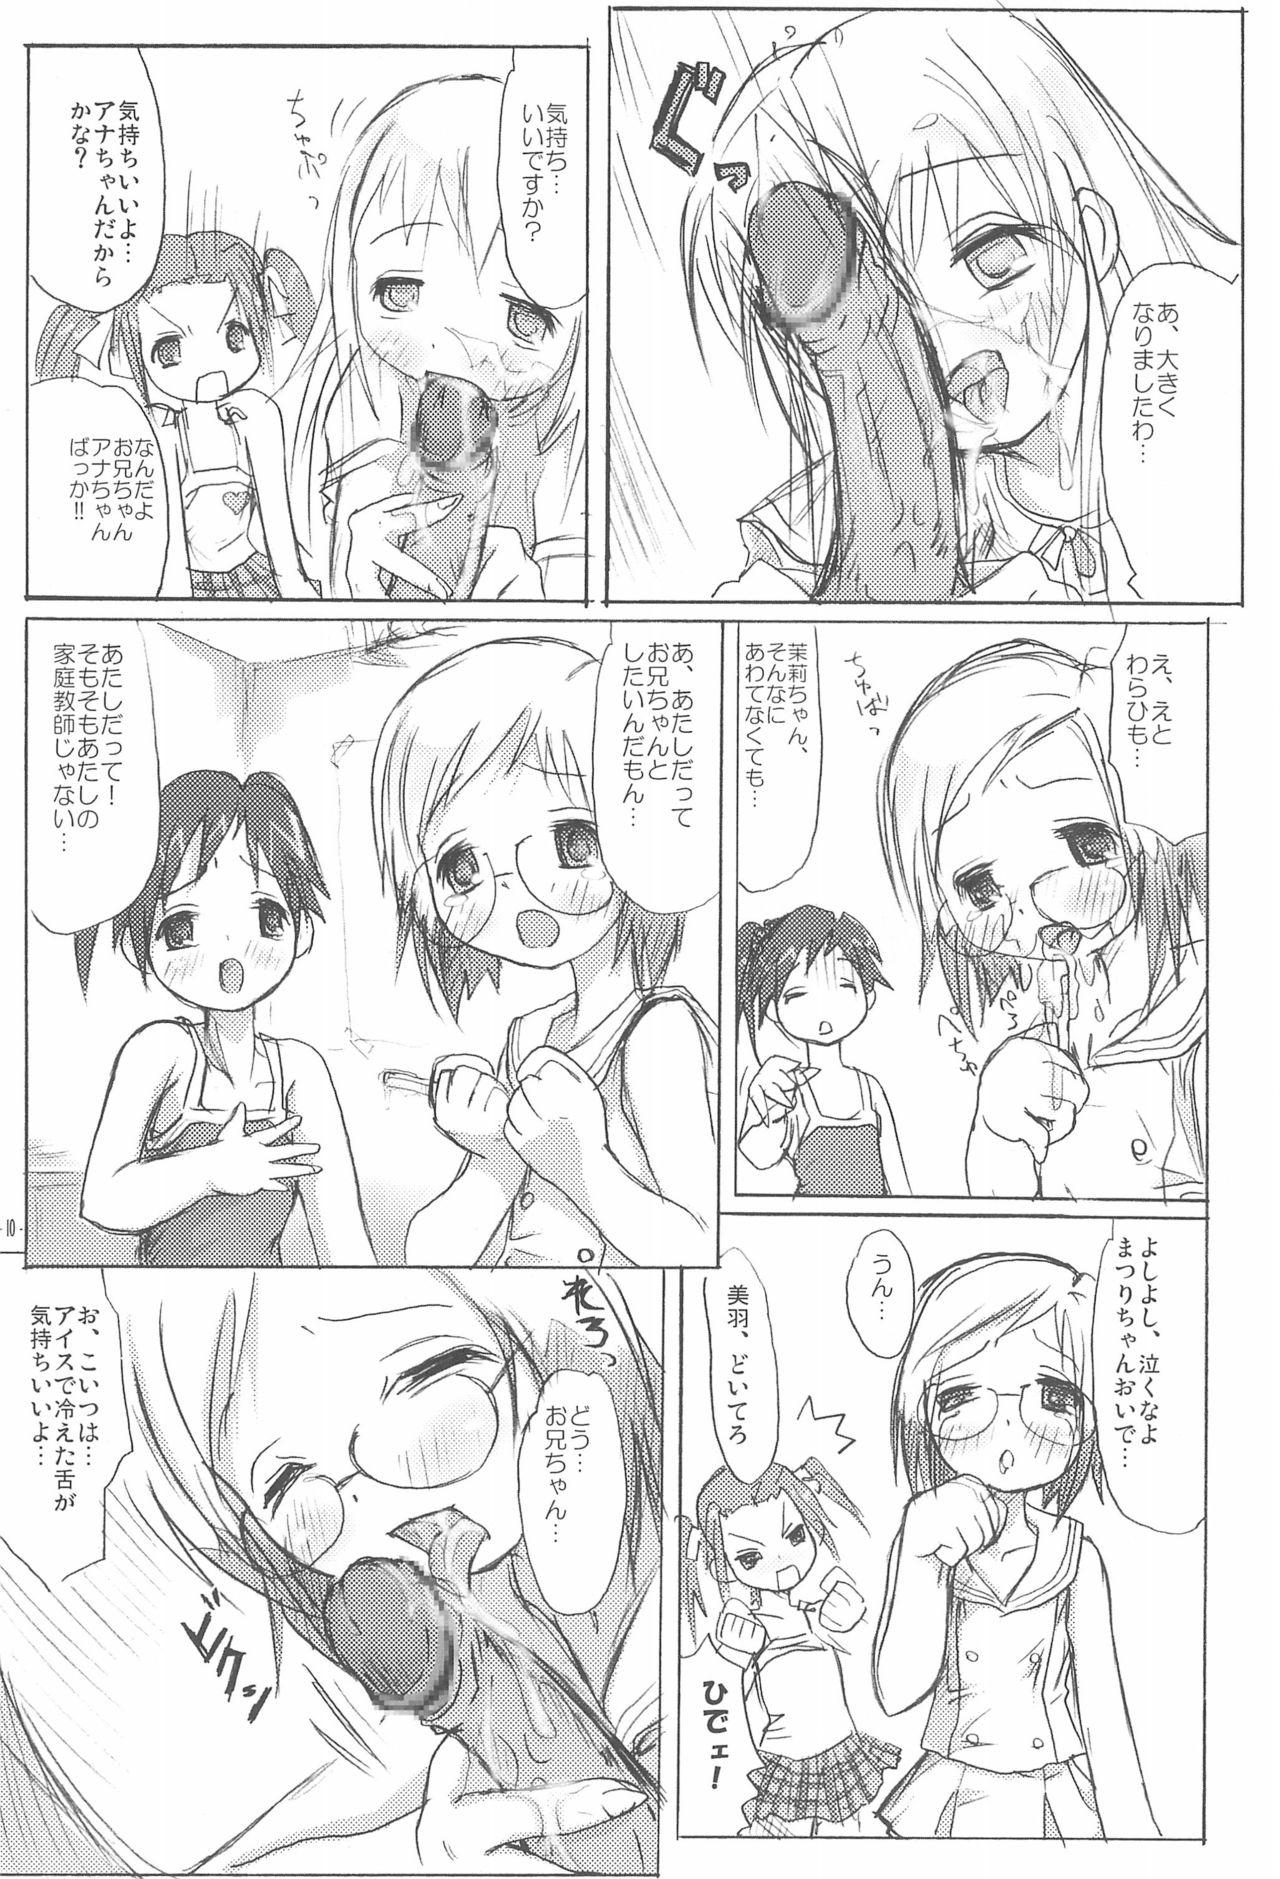 Women Sucking Dicks Ichigo Syrup. - Ichigo mashimaro Madura - Page 12